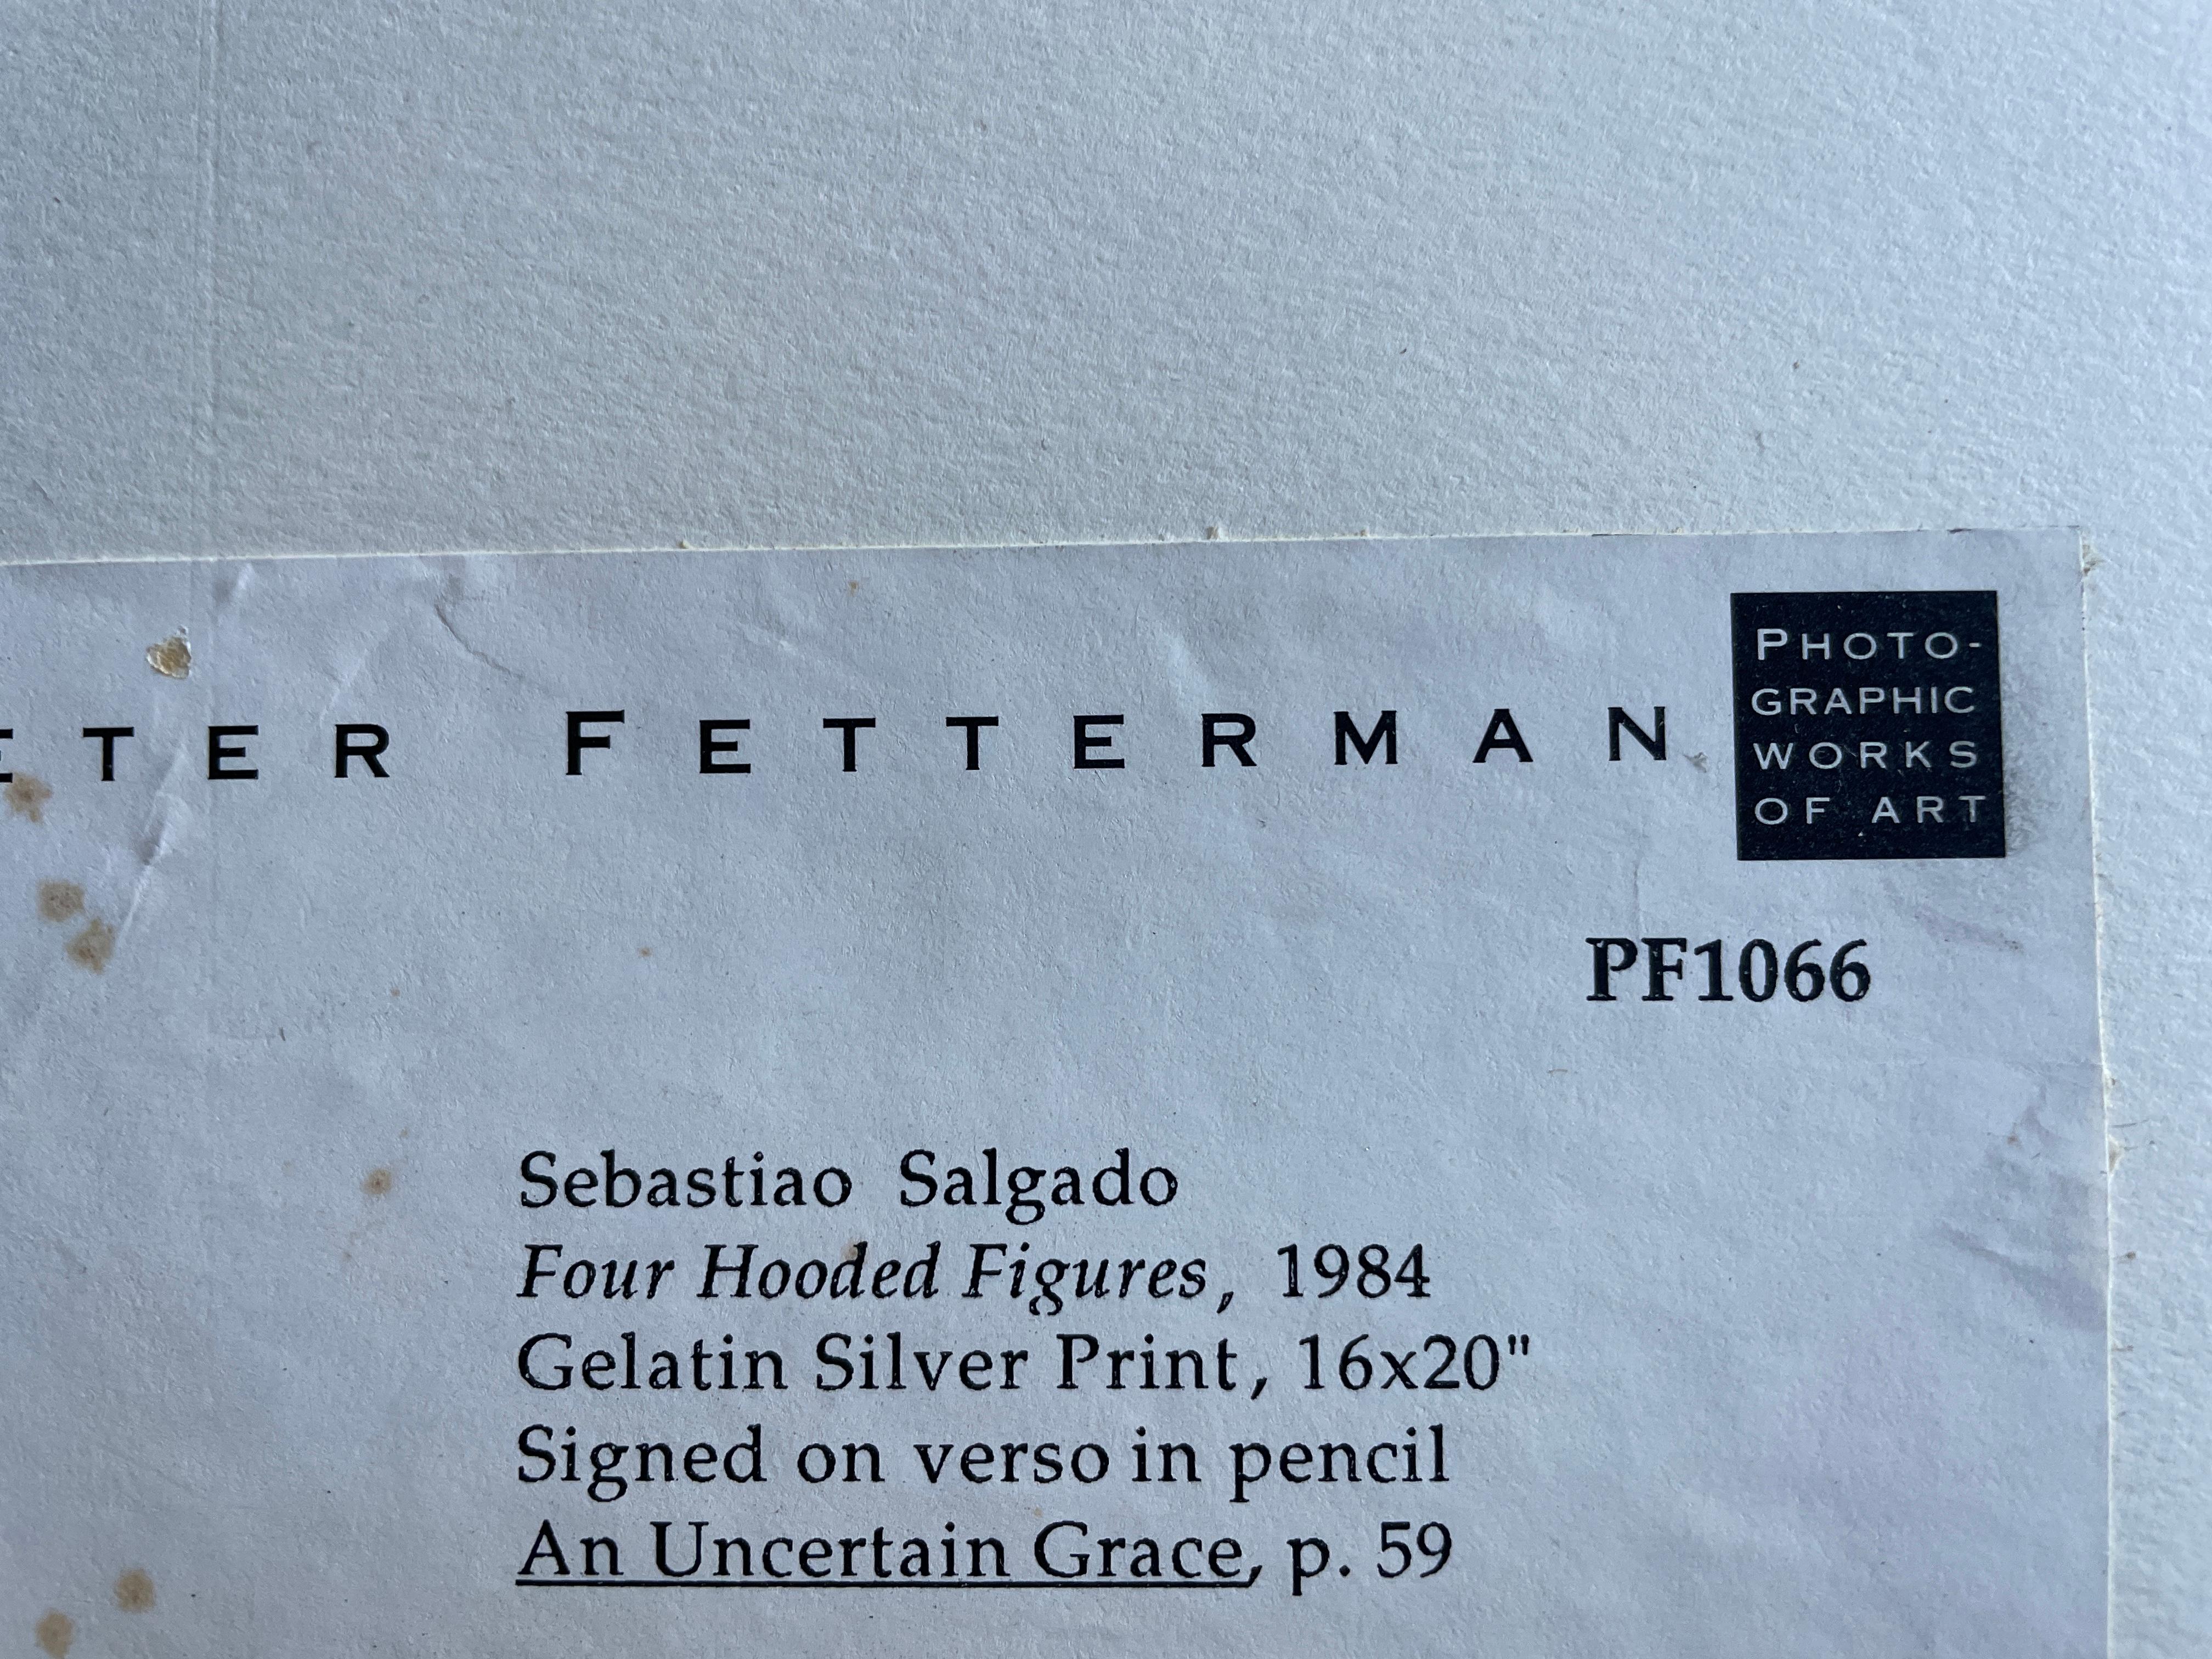 Acheté auprès de Peter Fetterman Gallery (a) Gallery - Distributeur agréé des œuvres de Salgado.
Pas de problèmes de dommages.  Les coins de l'impression ont été abîmés. Sur-matelas inclus.